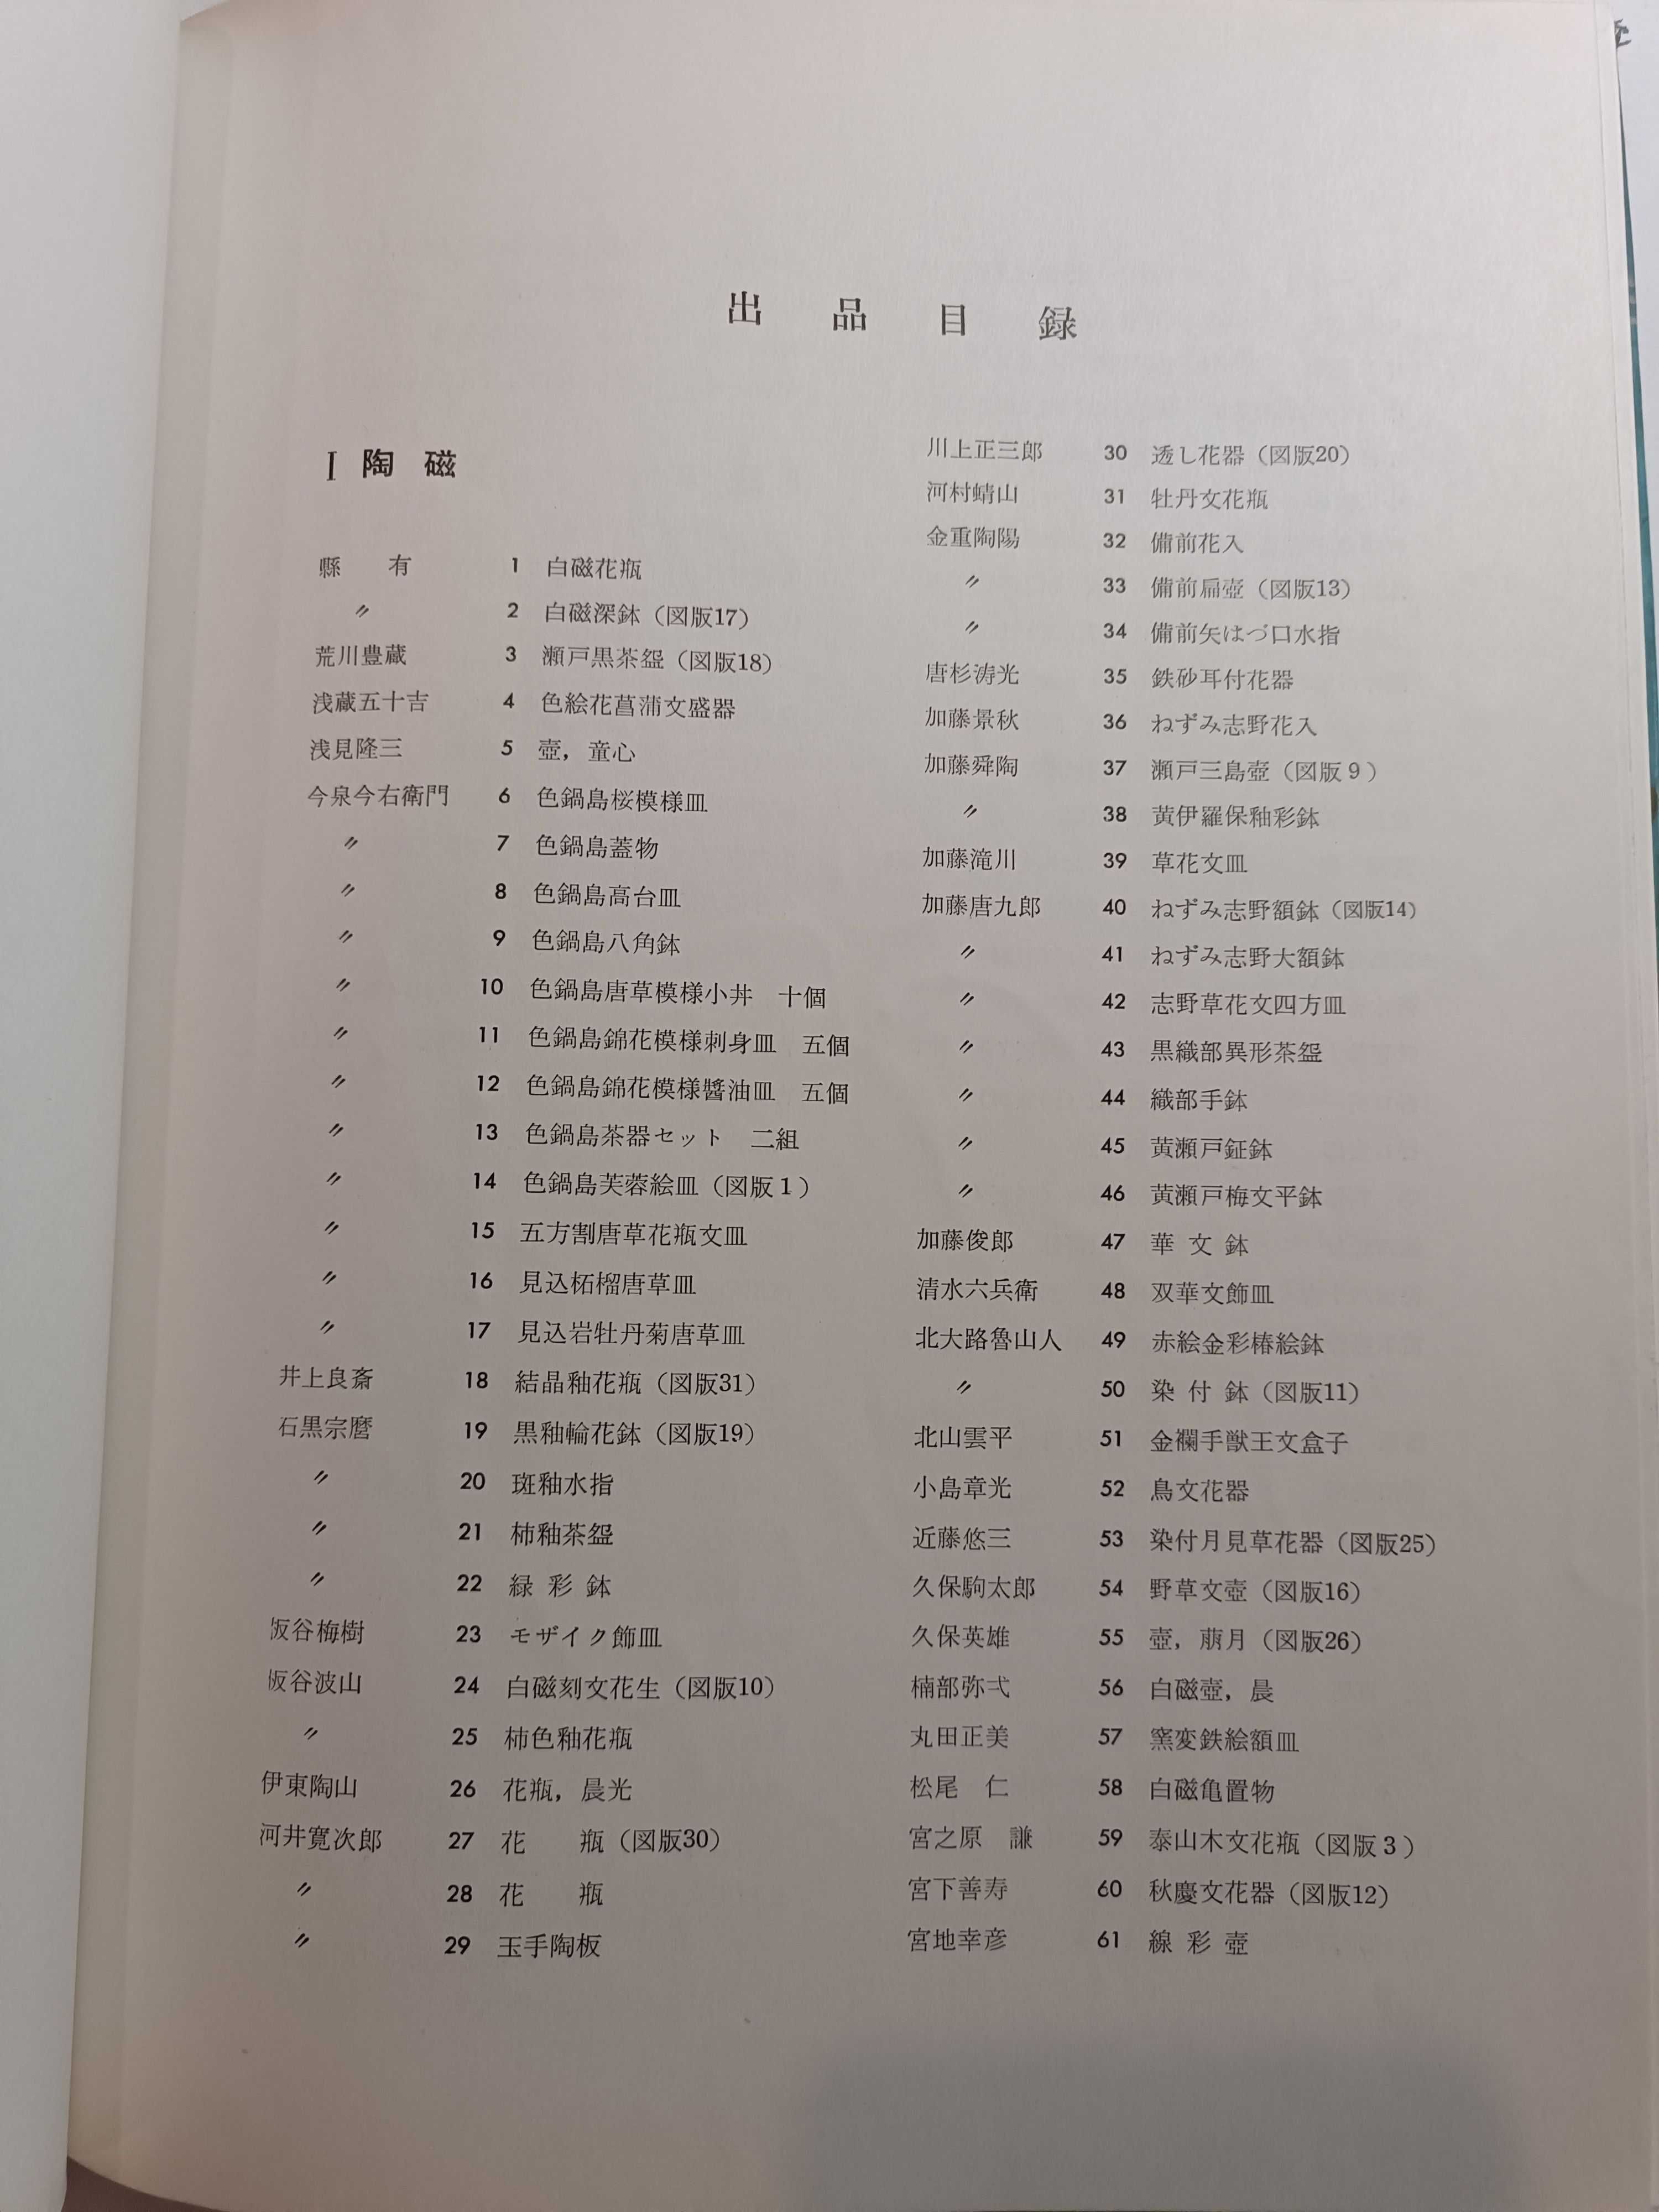 Katalog japońskiej kultury ALBUM po rosyjsku japońsku 1957 Tokio